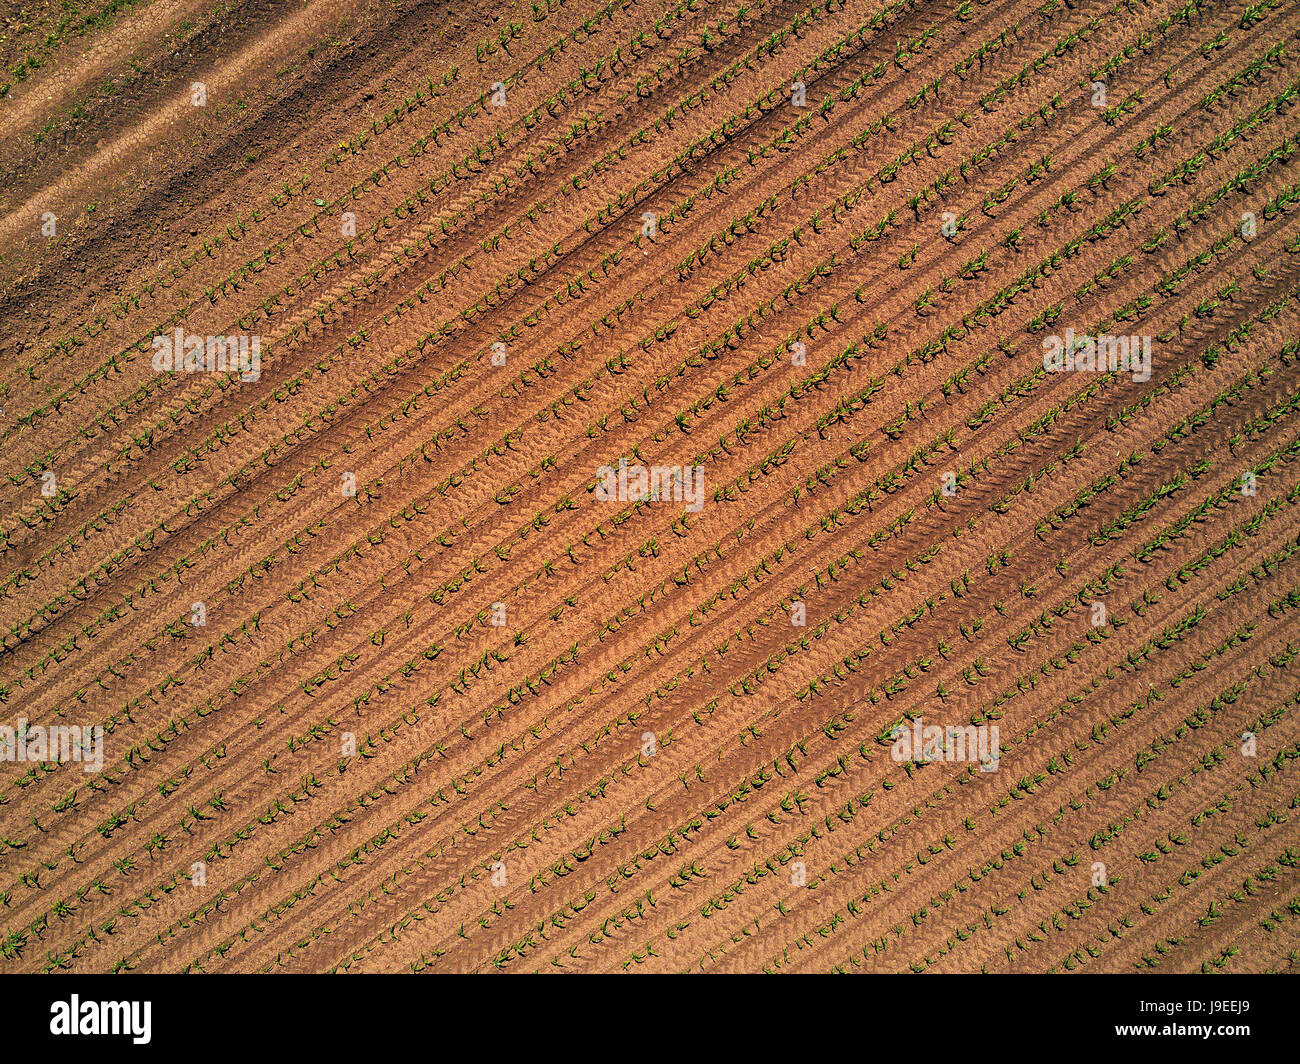 Vista aérea del campo de cultivo de maíz de maíz cultivado desde el punto de vista de drone Foto de stock